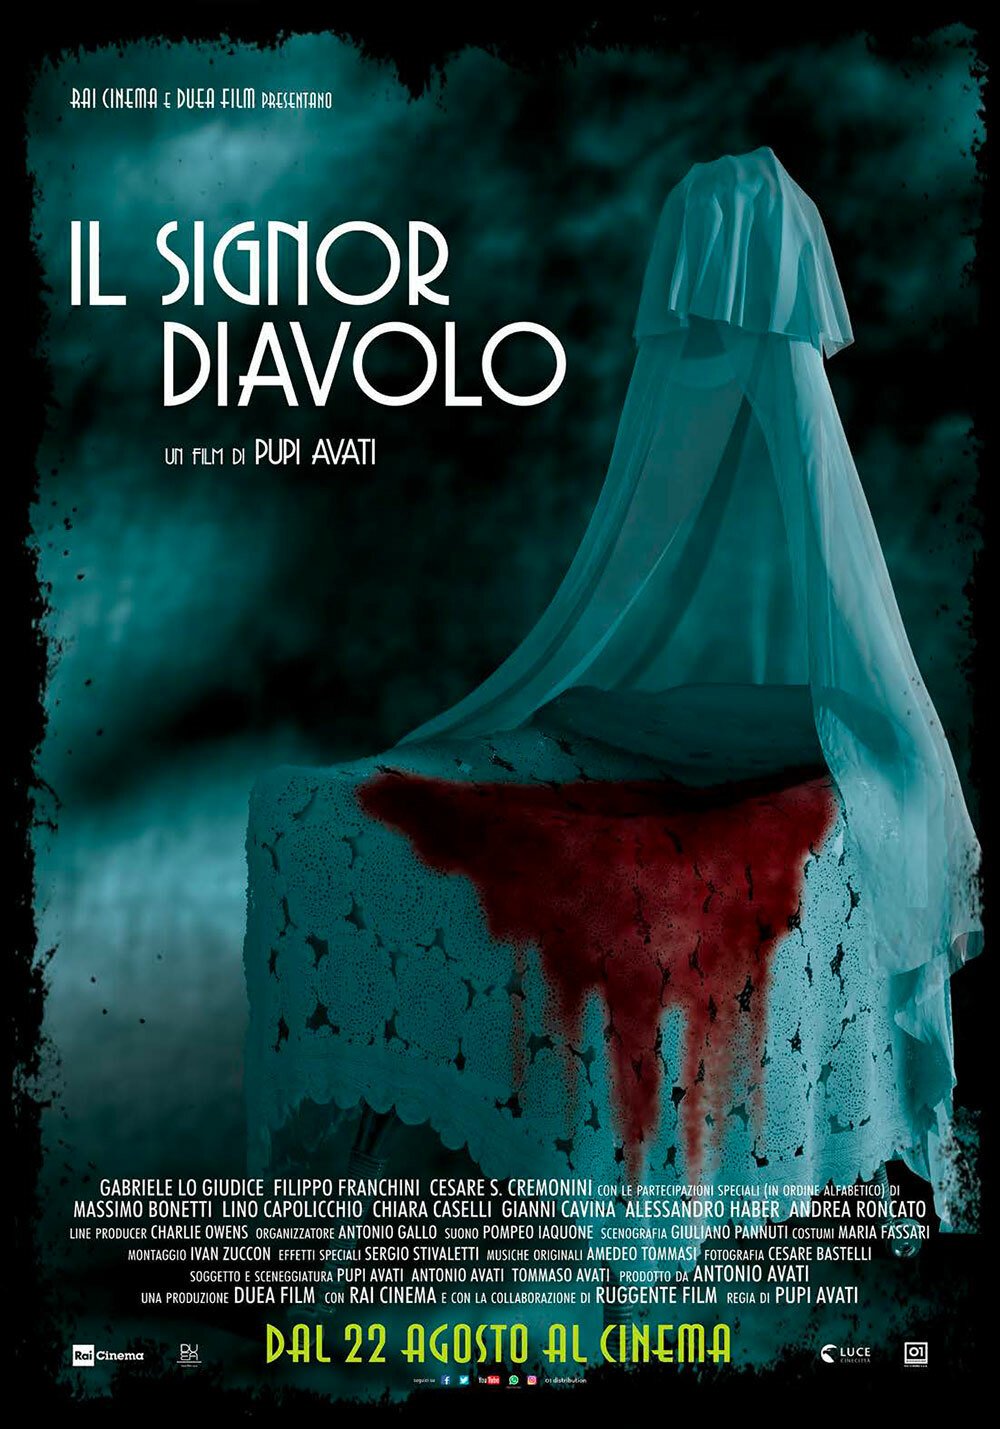 Il poster del film Il signor diavolo di Pupi Avati